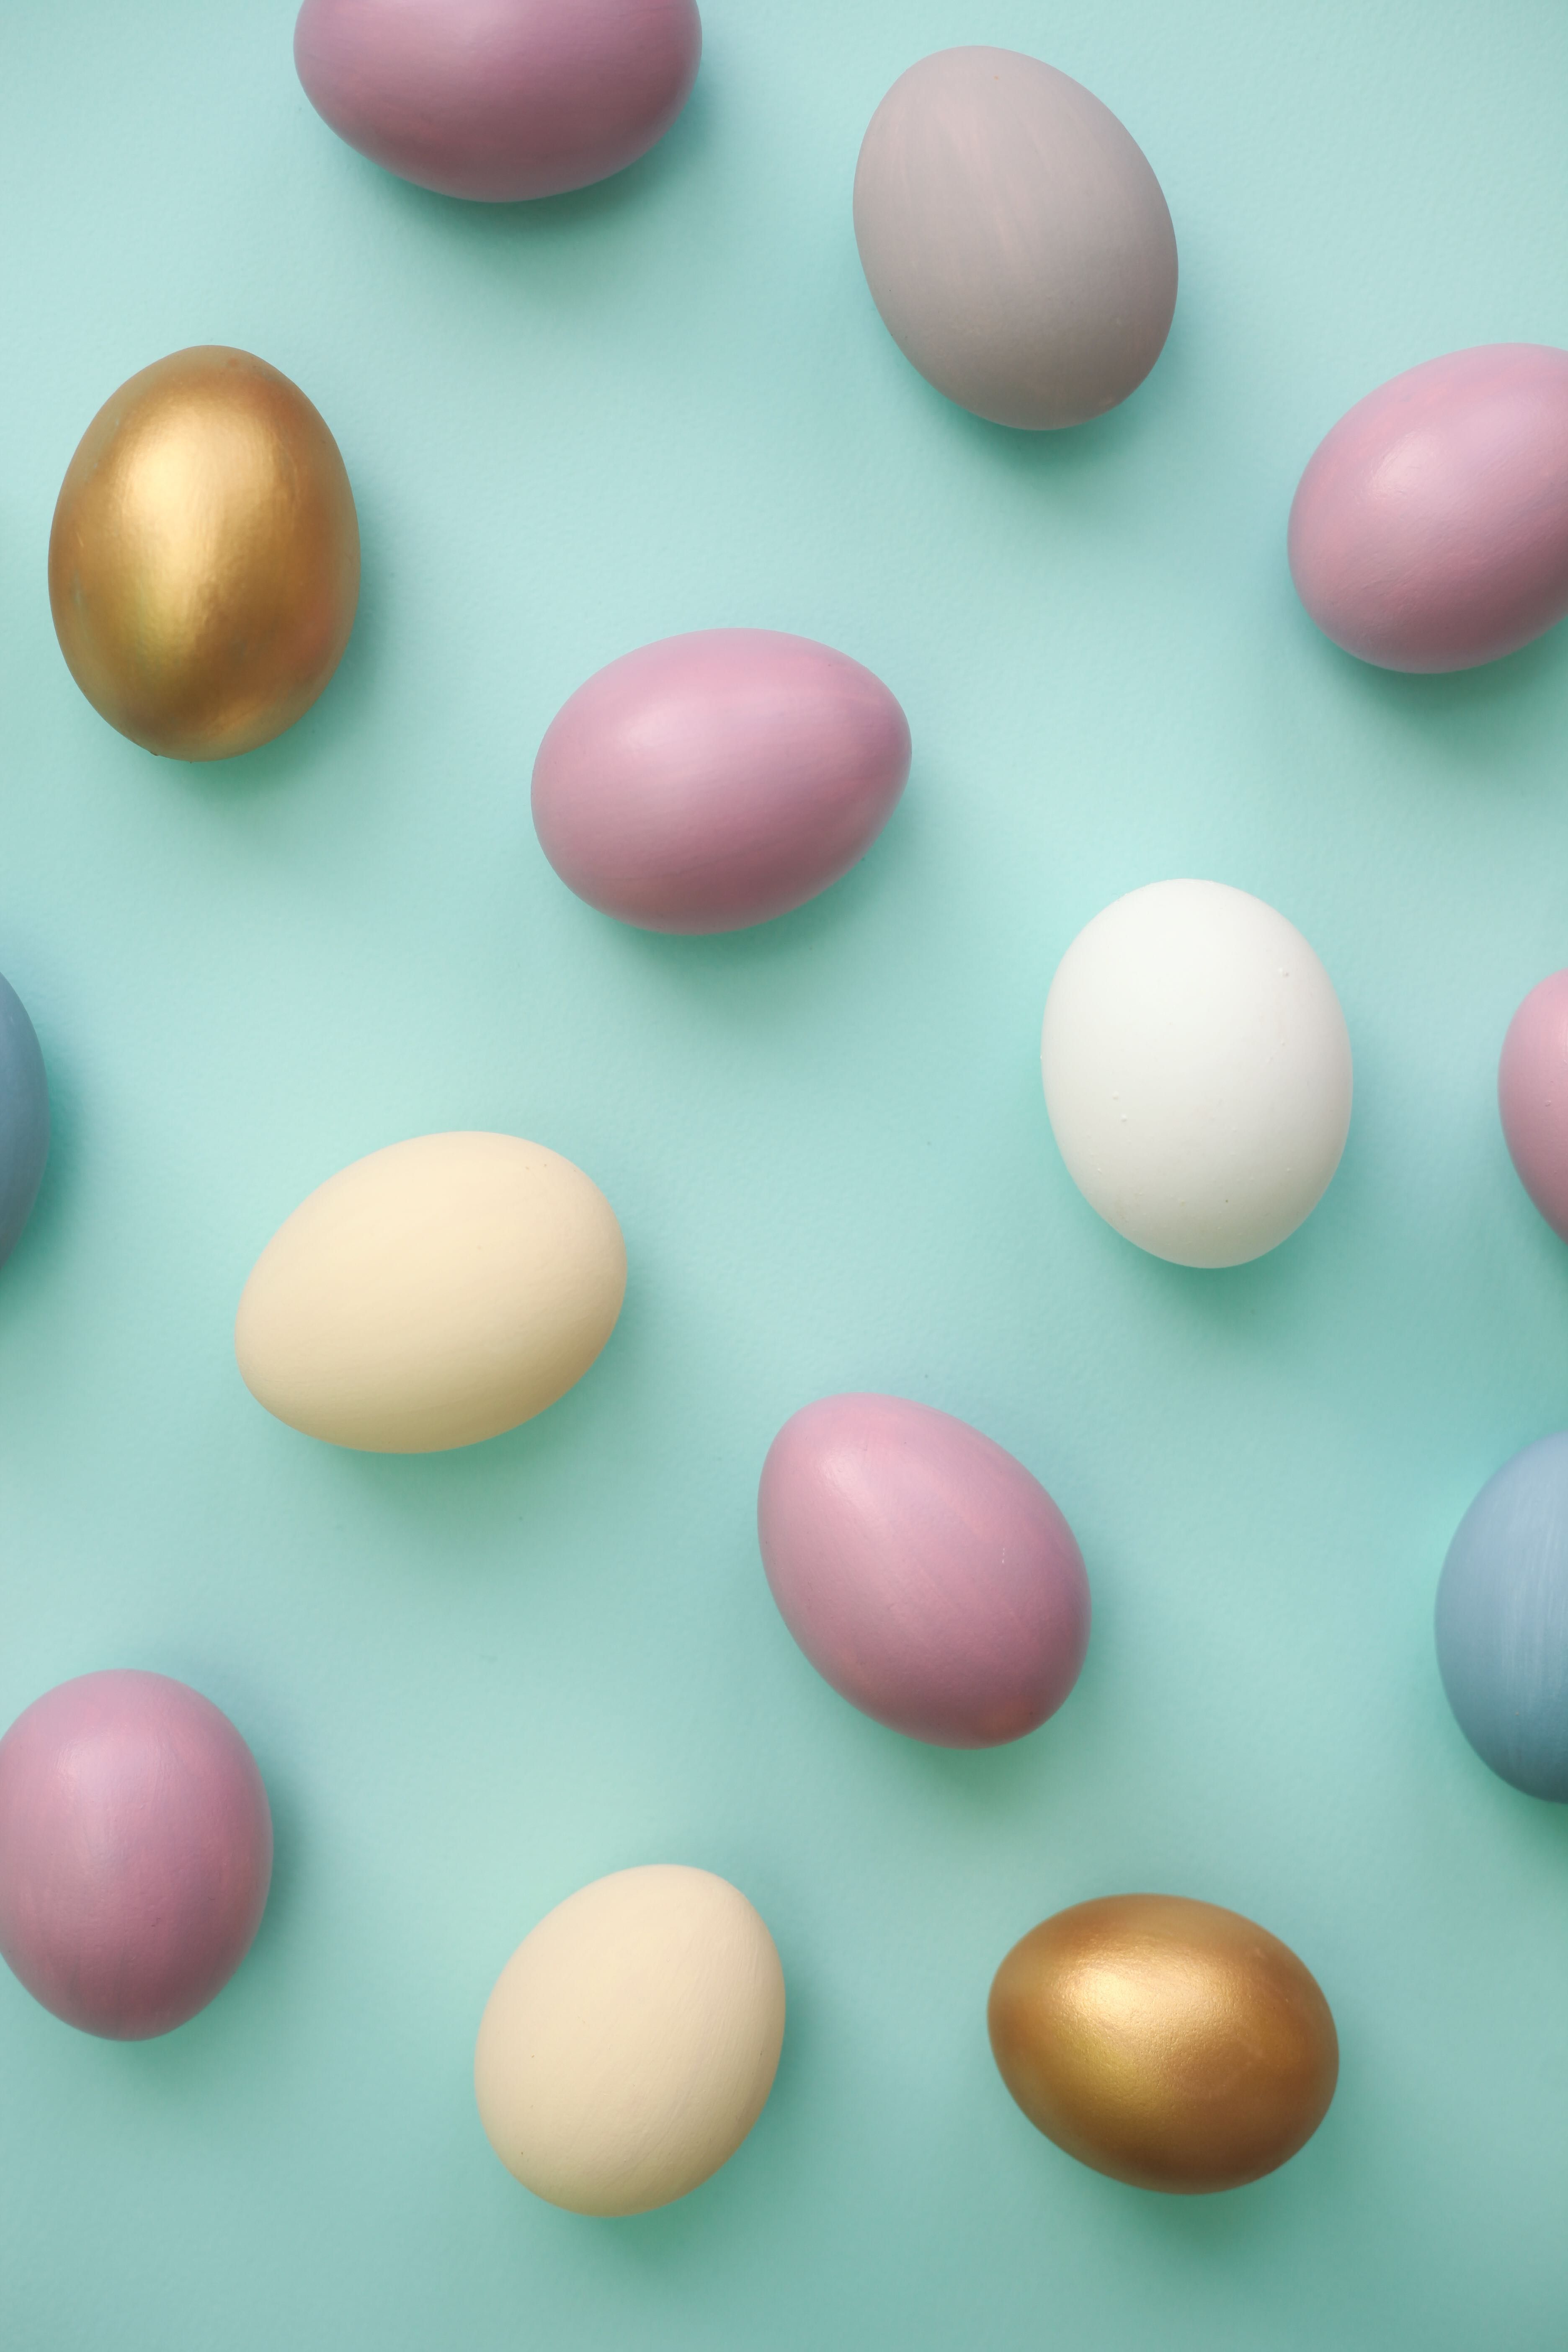 Best Easter Egg Hunt Ideas